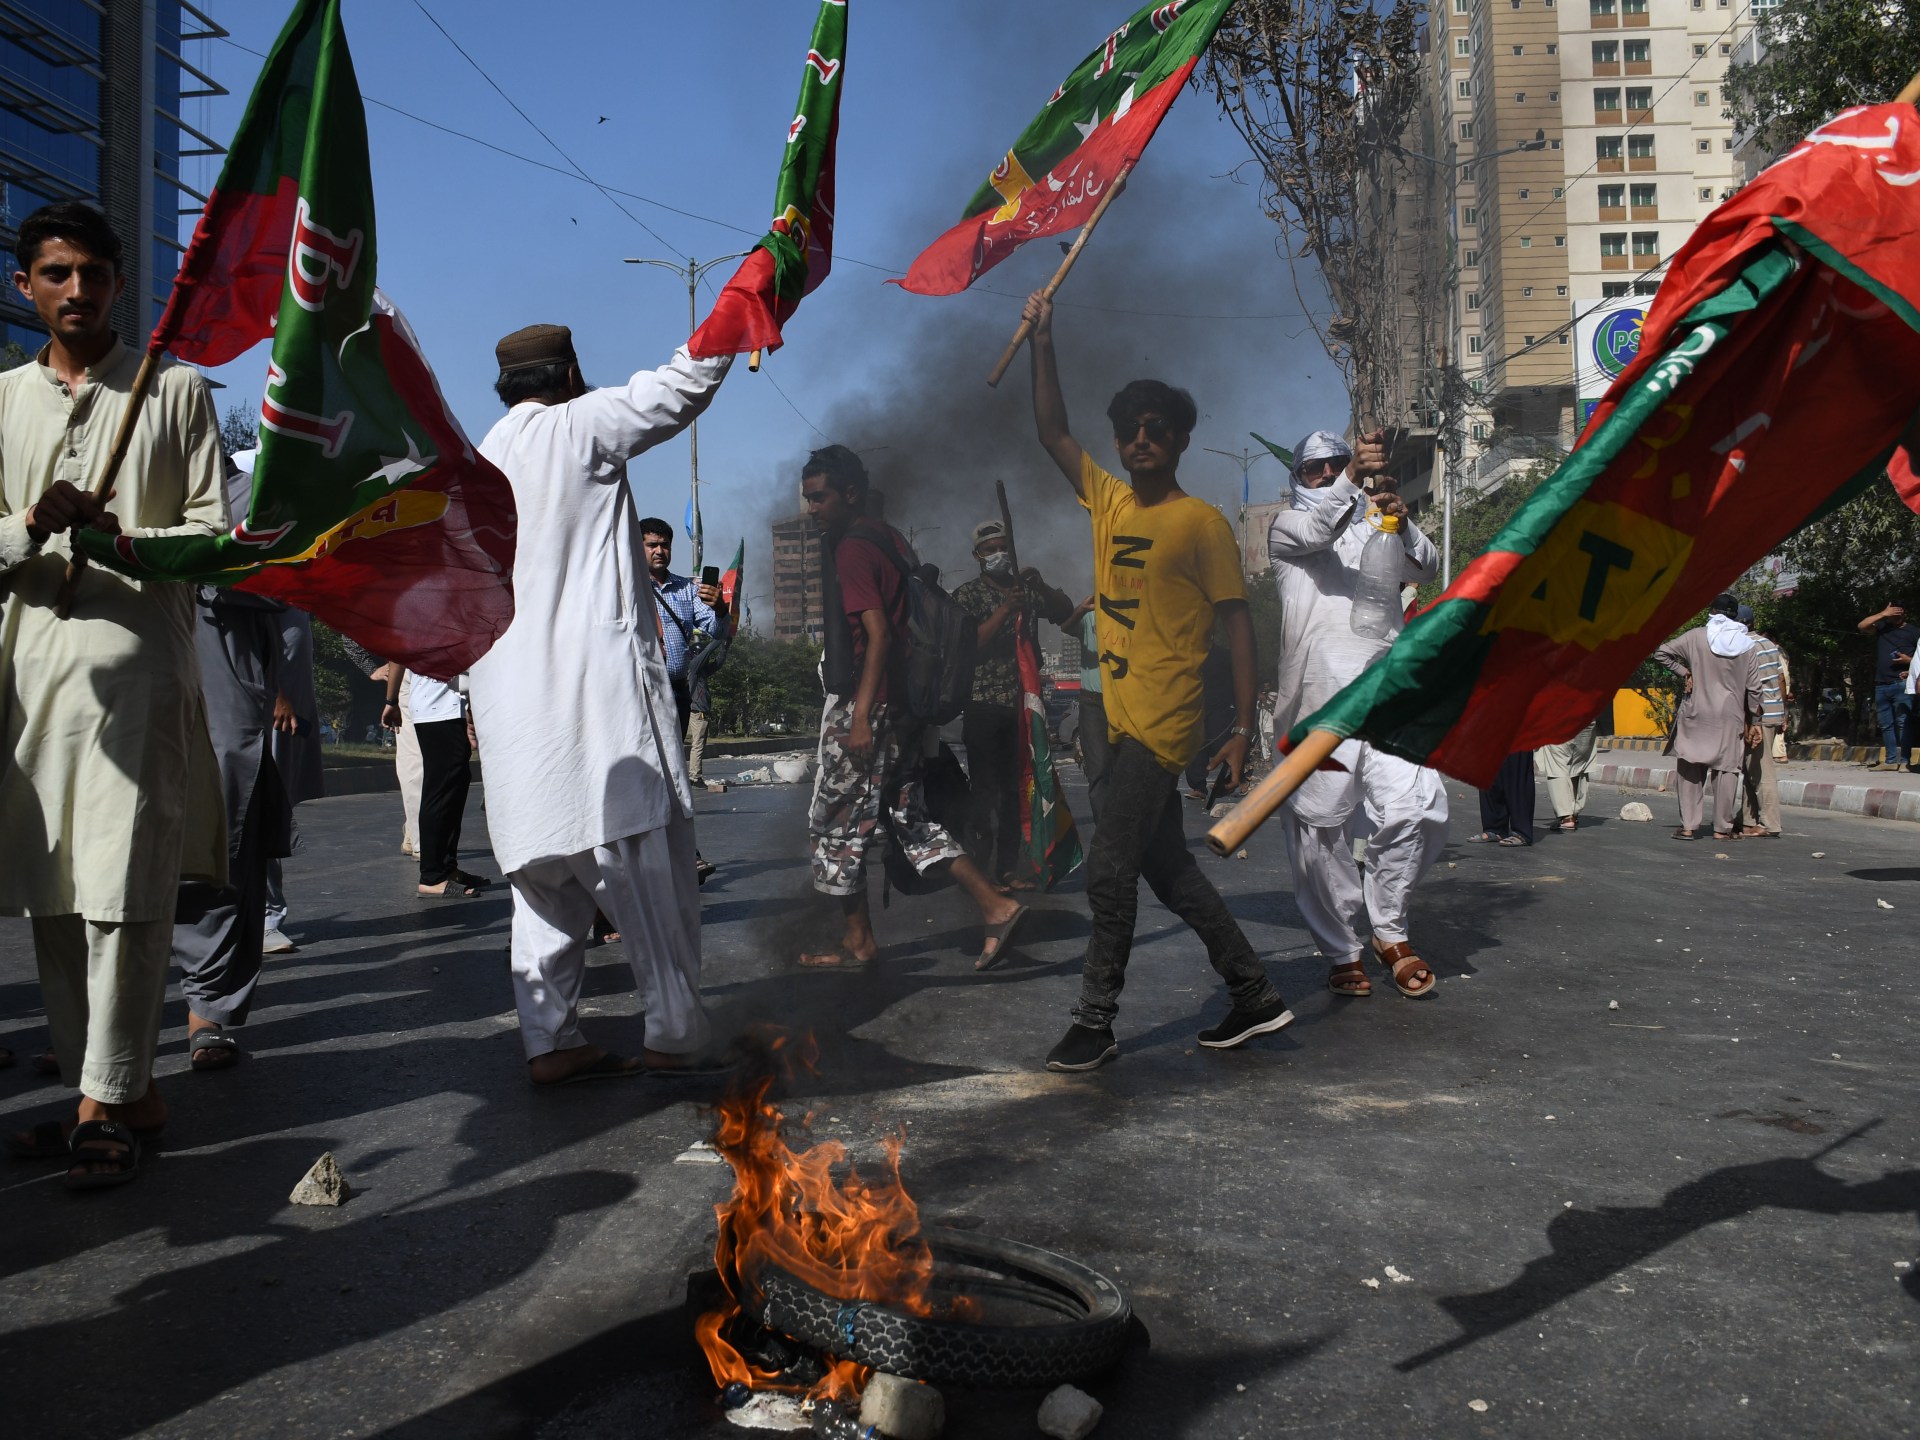 L’armée pakistanaise s’engage à punir les “planificateurs” des manifestations violentes |  Nouvelles d’Imran Khan